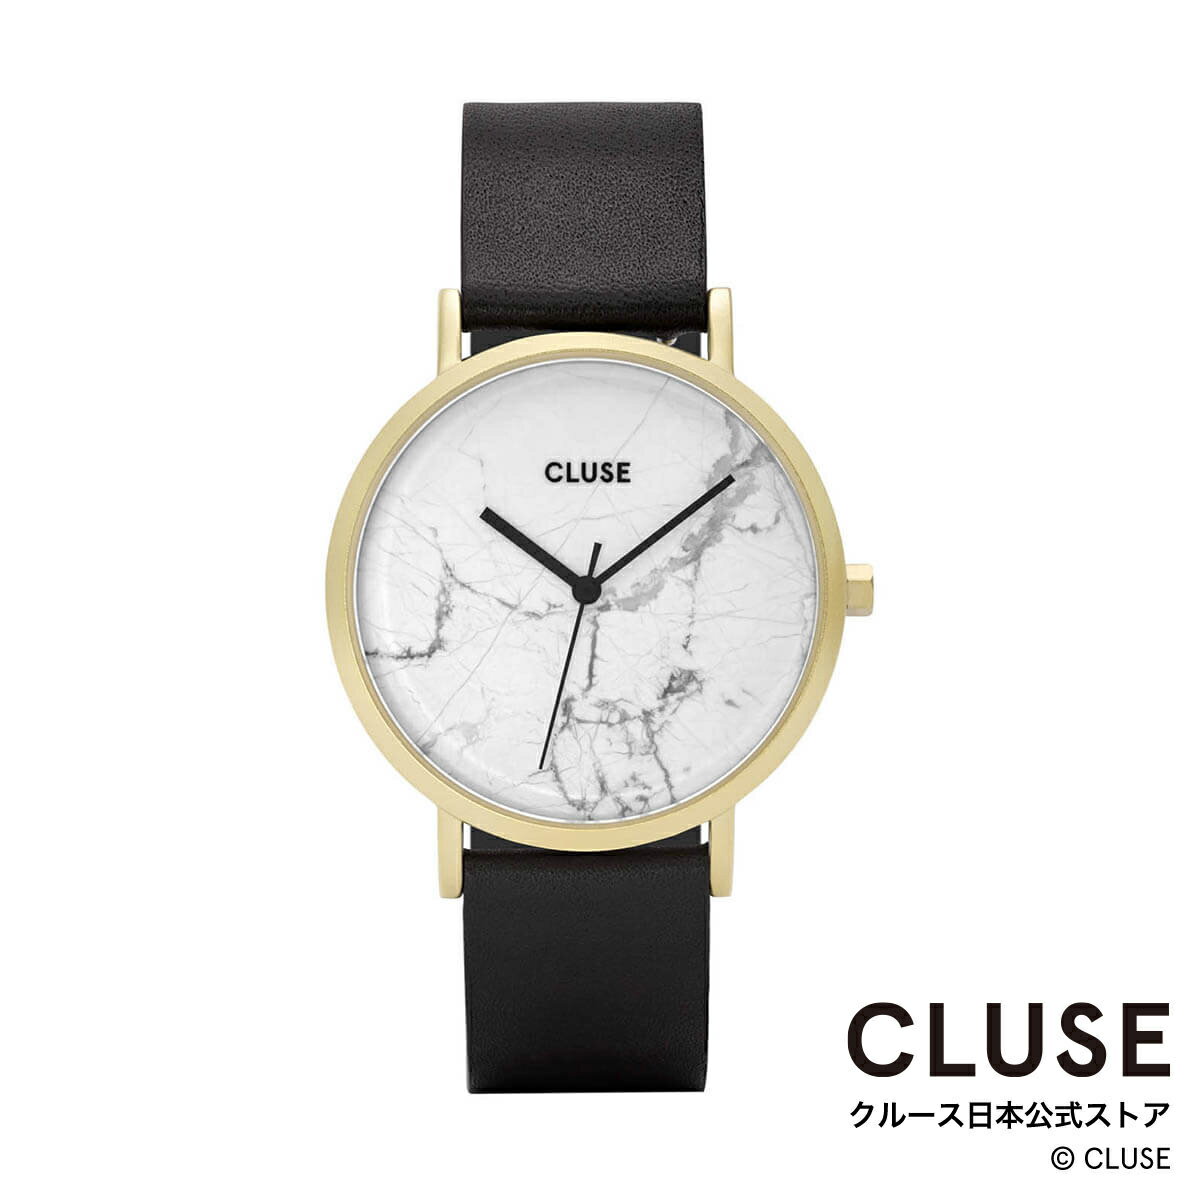 クルース ビジネス腕時計 レディース クルース CLUSE 日本公式ストア ラ・ロッシュ ゴールド ホワイト マーブル ブラック レディース 女性 腕時計 時計 防水 クォーツ